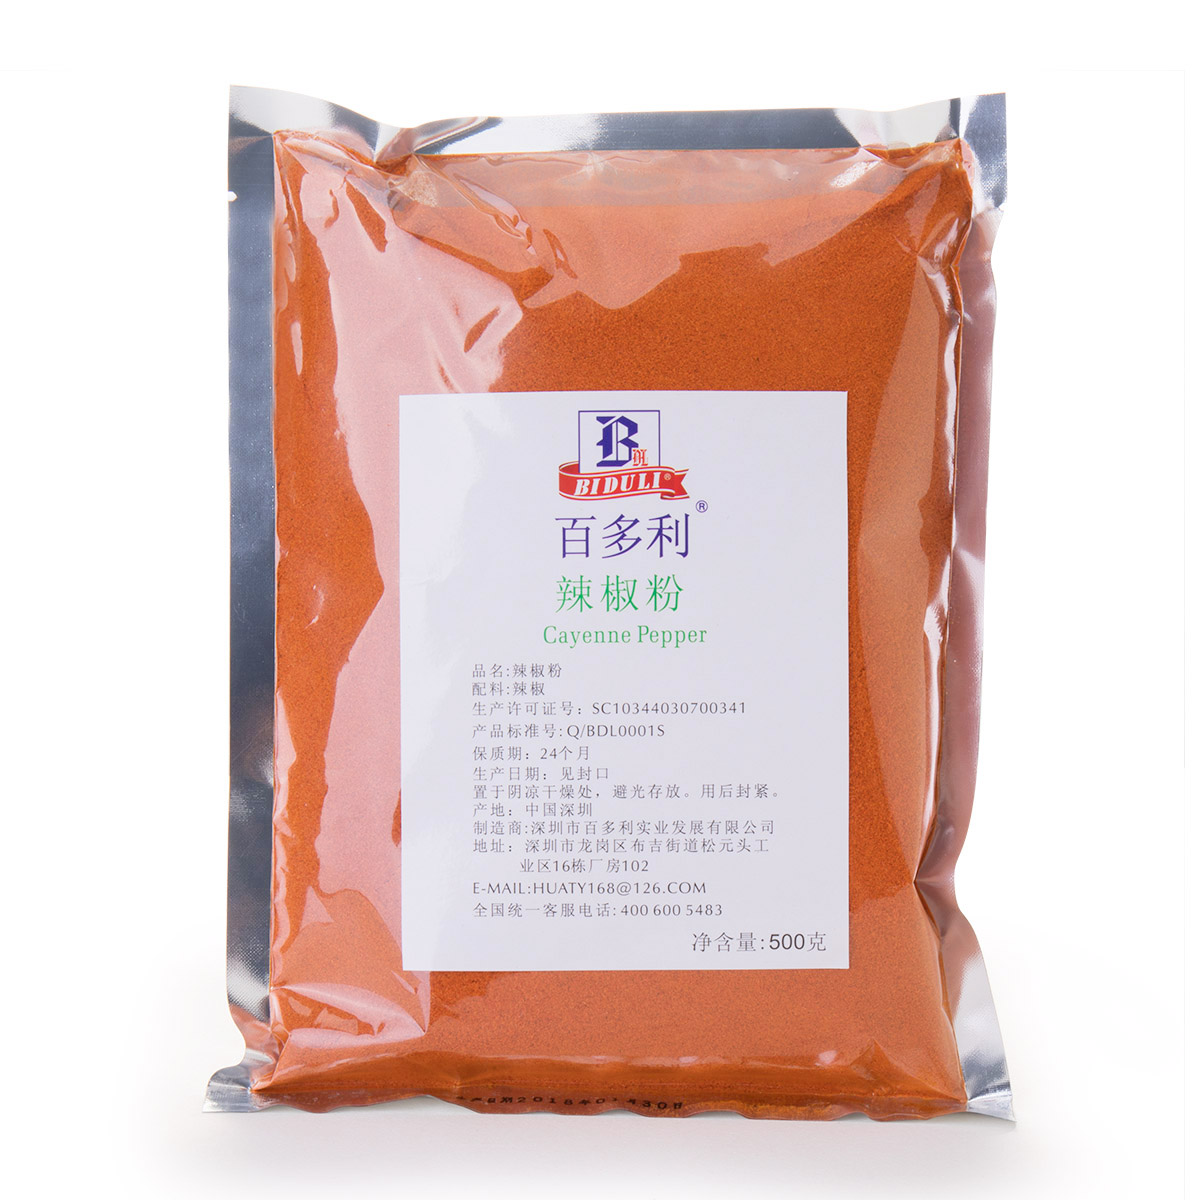 深圳香料调味品生产厂家 供应袋装白胡椒粉辣椒粉孜然粉五香粉